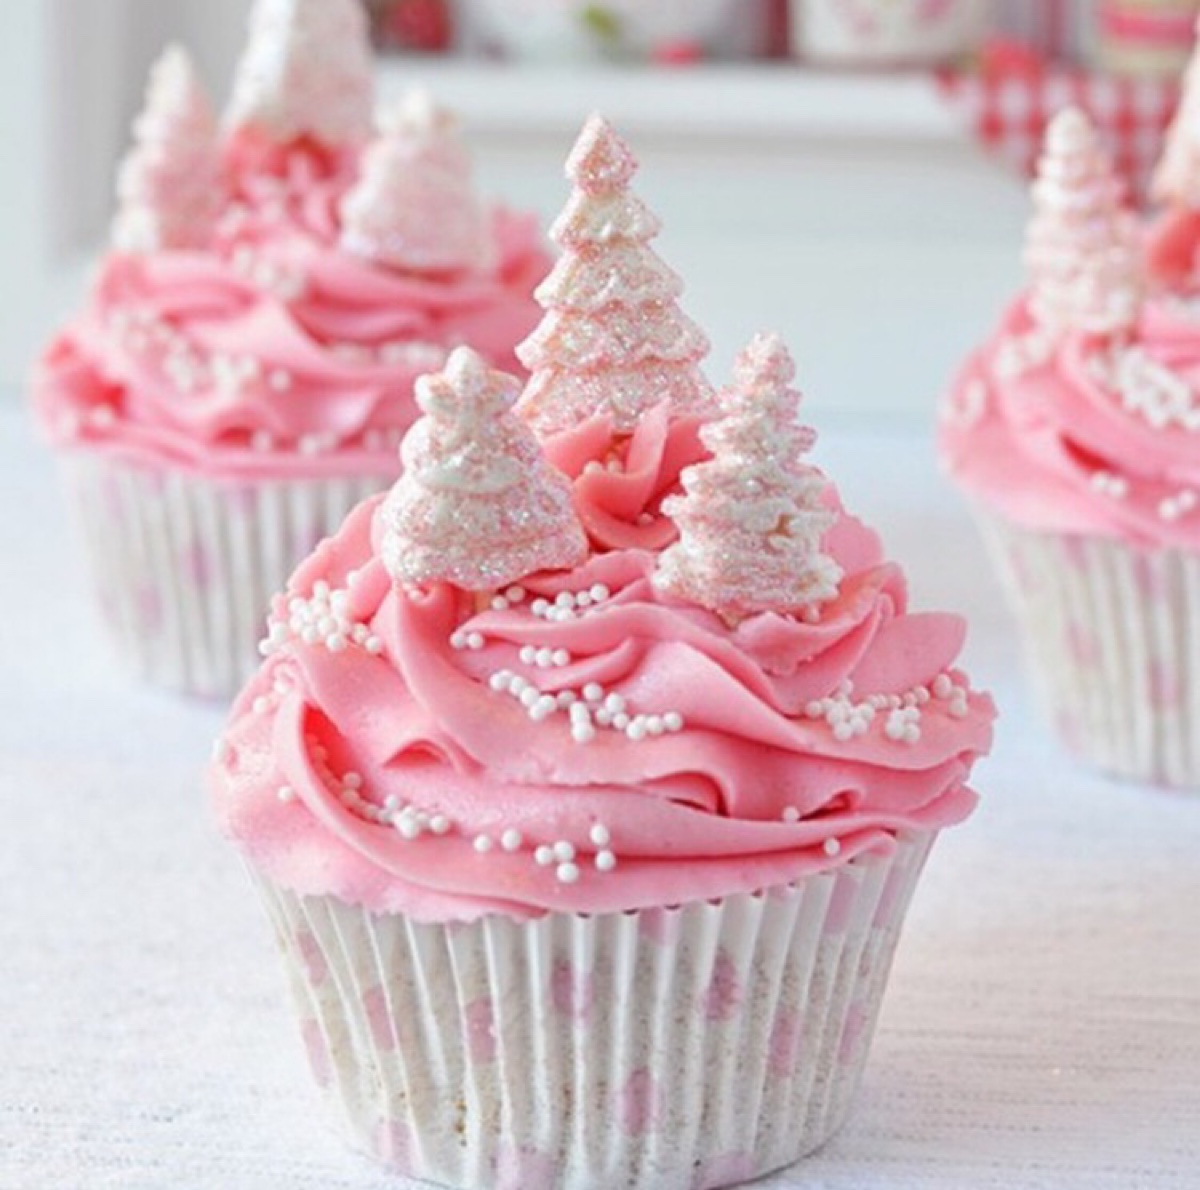 纸杯蛋糕 粉色 圣诞树 甜点 美食